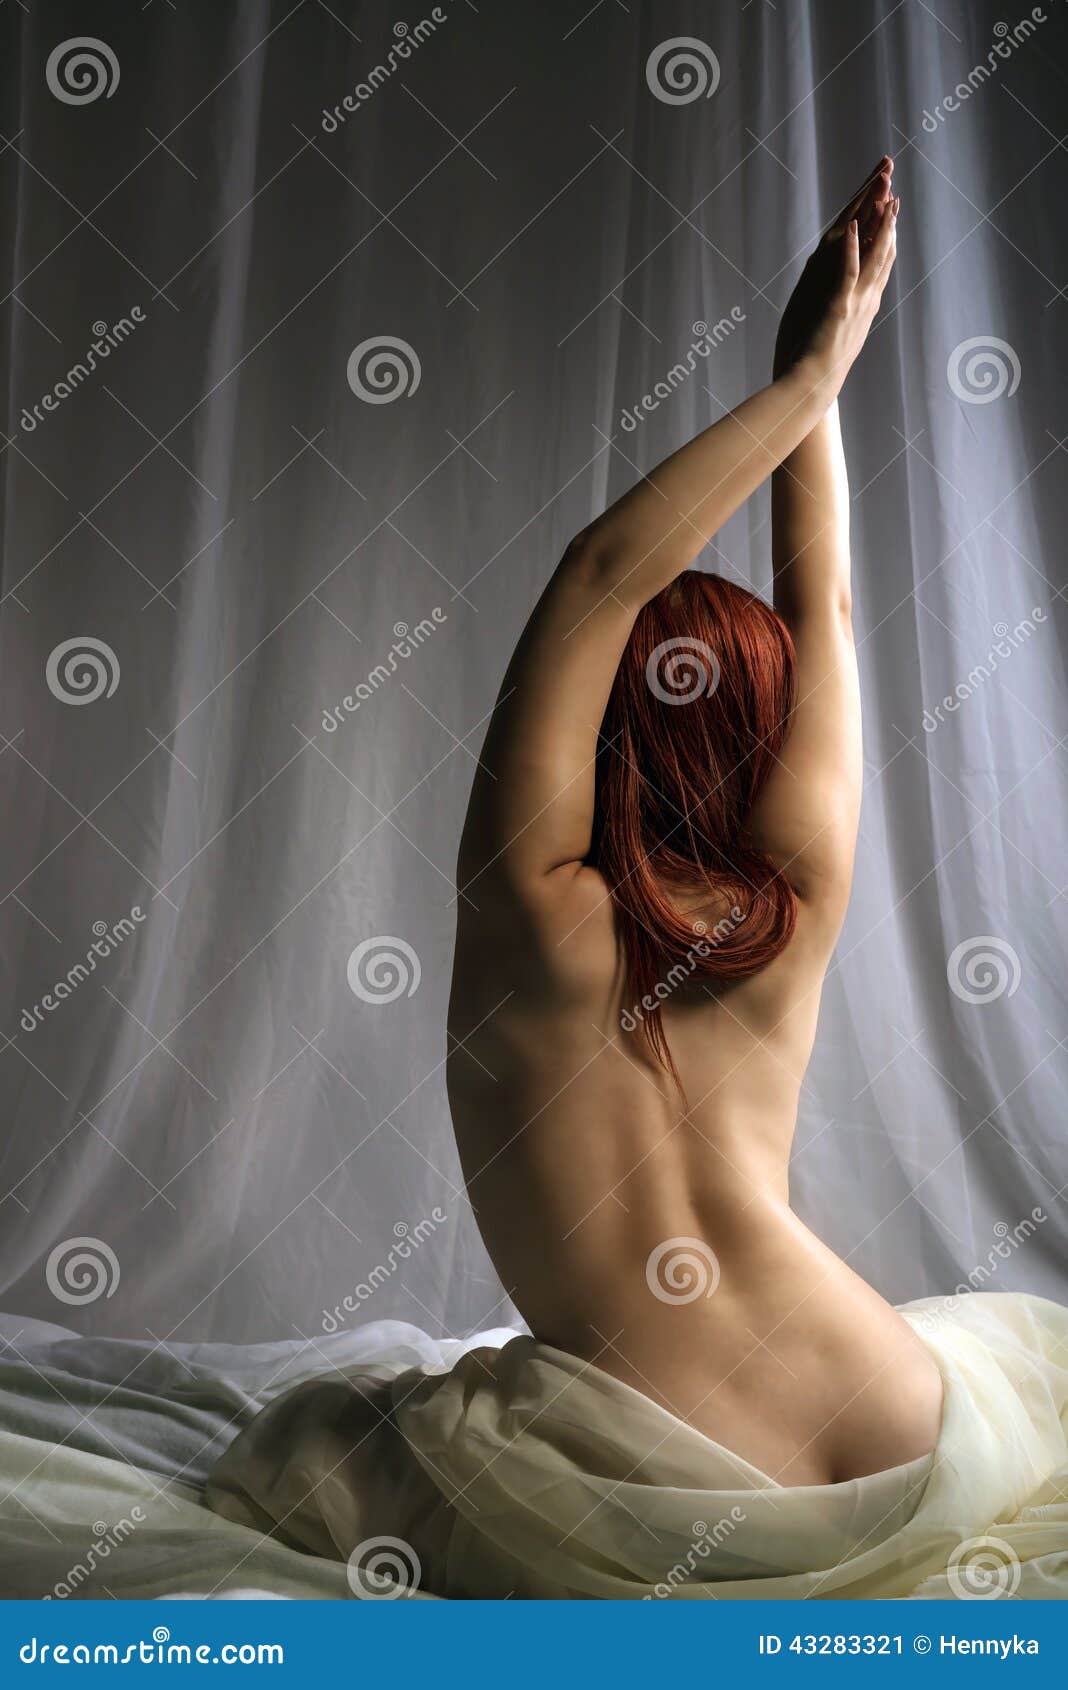 Girls Naked On Bed pornstar porn